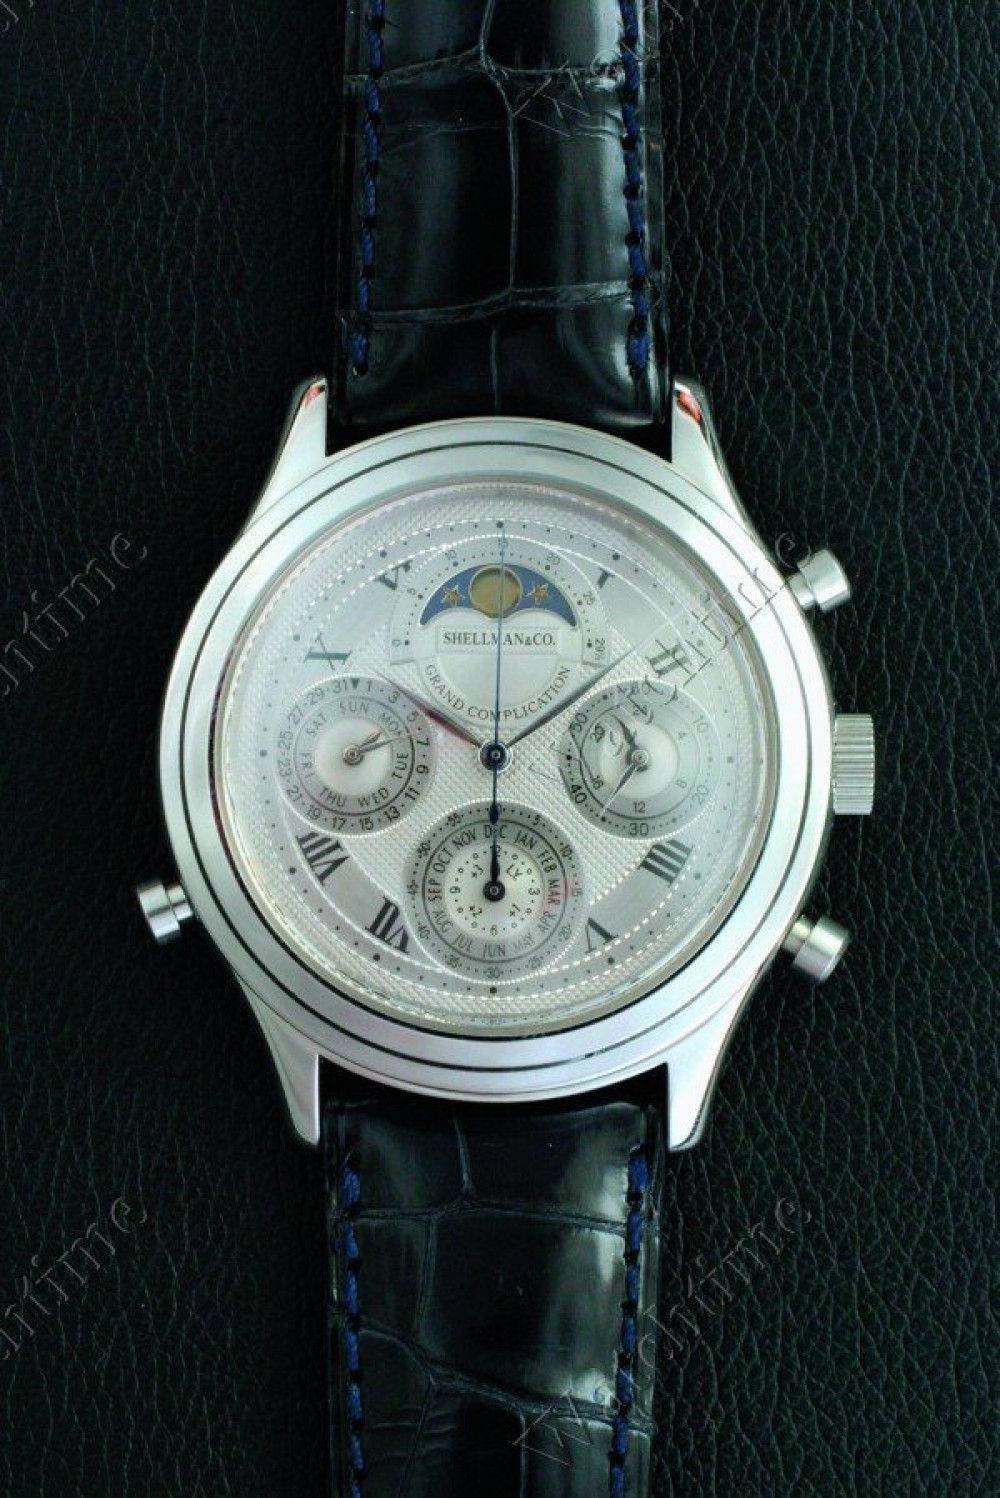 Zegarek firmy Shellman & Co., model Grand Complication